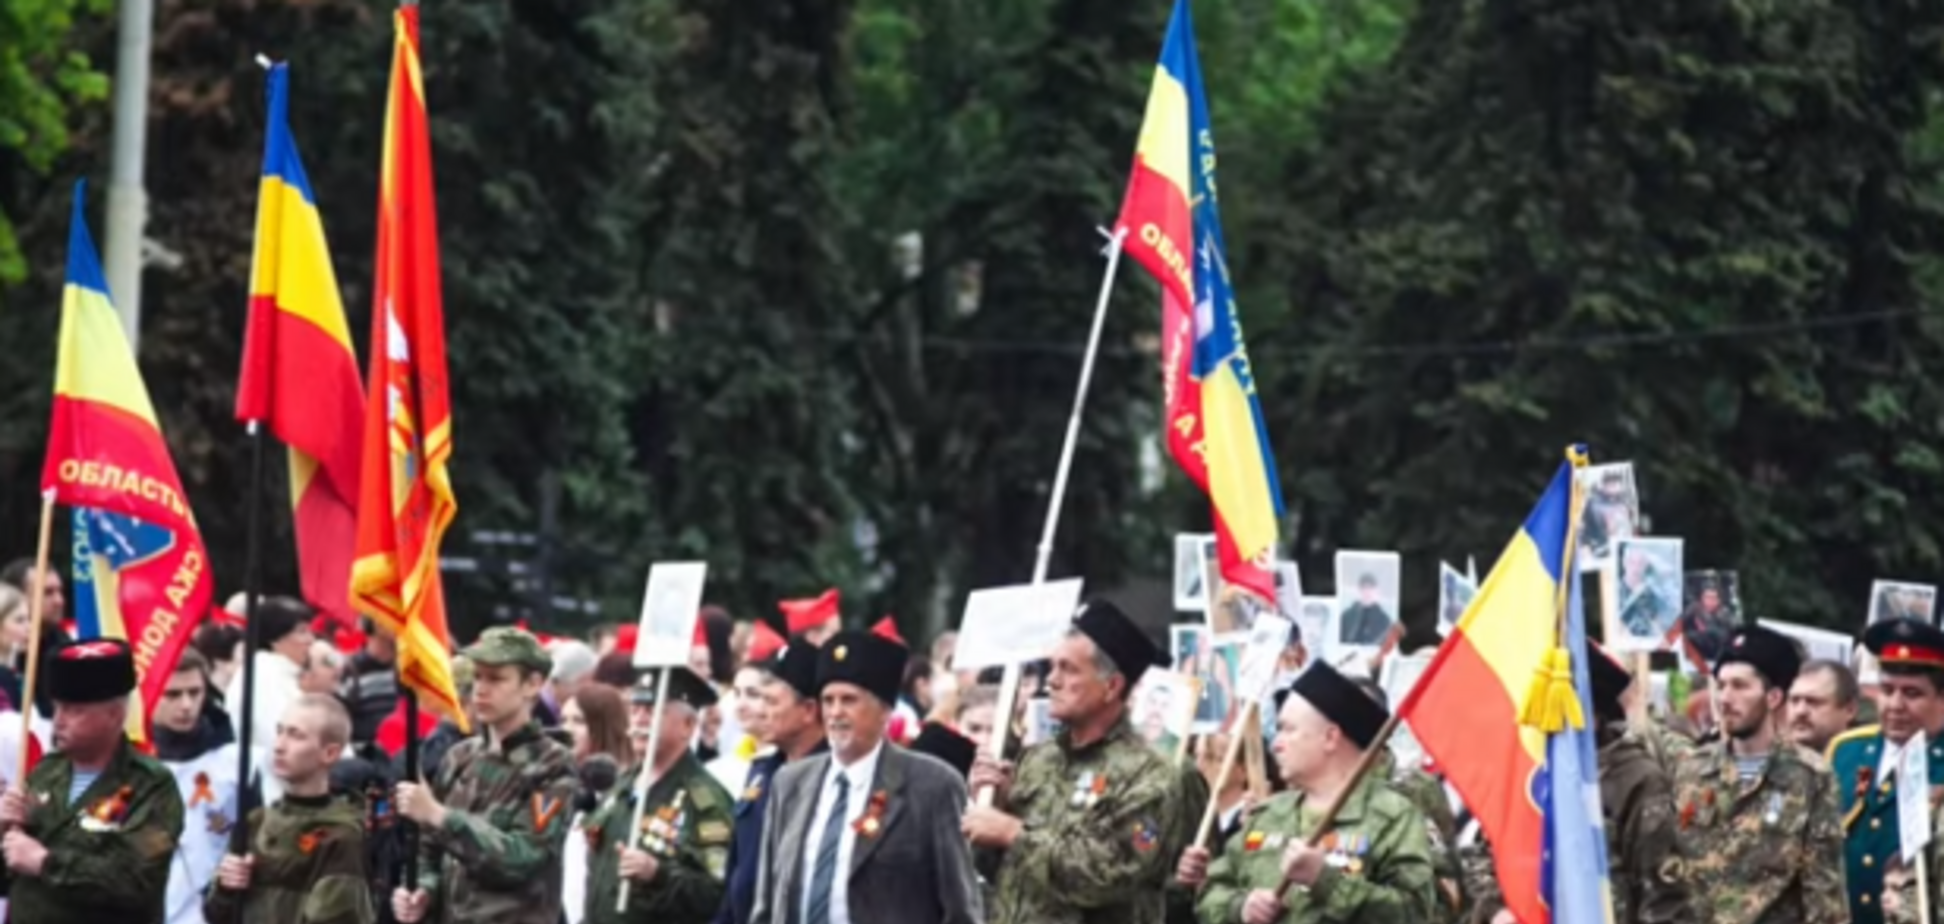 'Ще про б*ндерівців говорять': у 'ДНР' оскандалилися з відомим нацистом у 'Безсмертному полку'